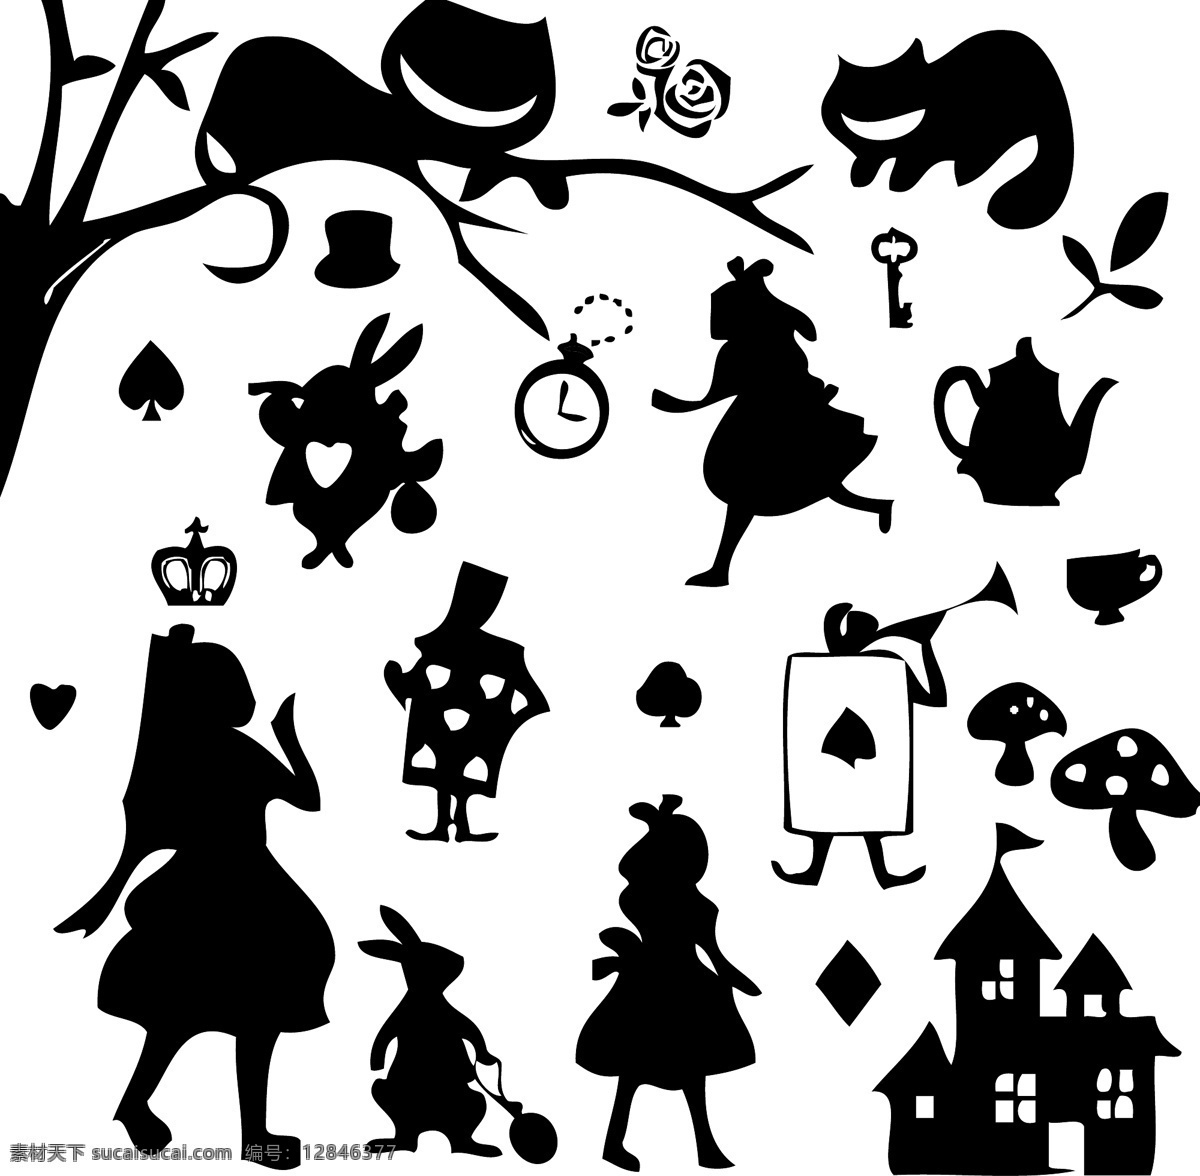 愛 麗 絲 夢 遊 仙境 剪影 矢量 愛麗絲 夢遊仙境 妙妙貓 時間兔 撲克牌 城堡 童話鎮 夢幻 日系 动漫动画 动漫人物